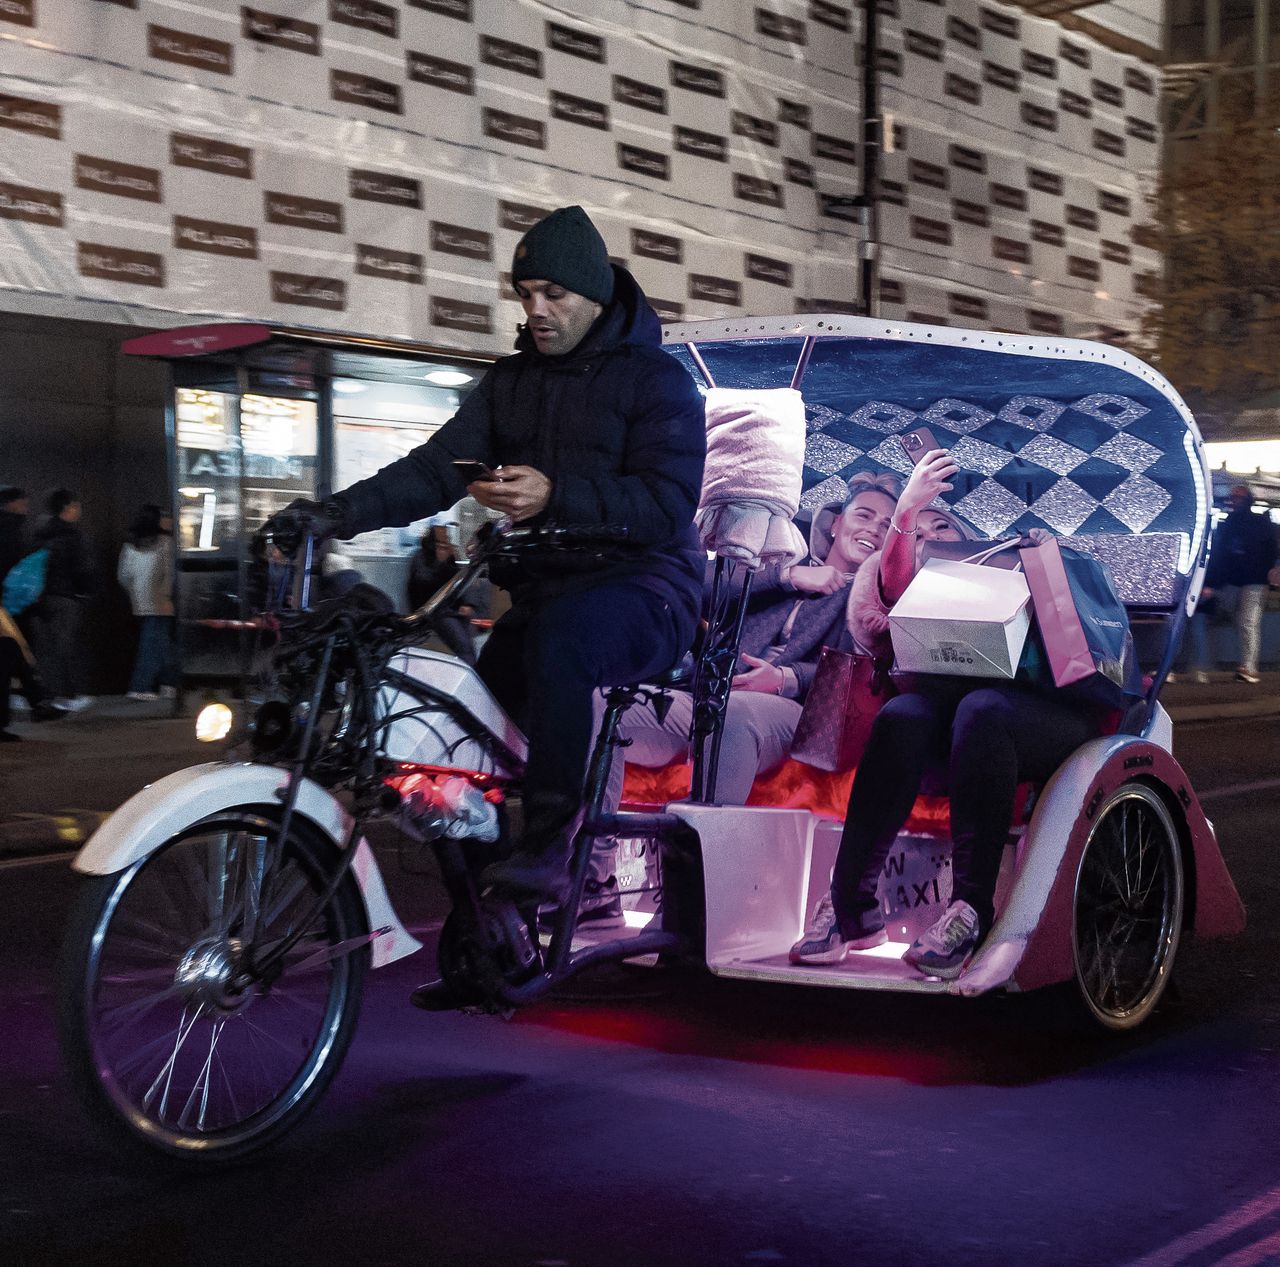 Londense fietstaxi’s: hebben die echt de meeste prioriteit? 